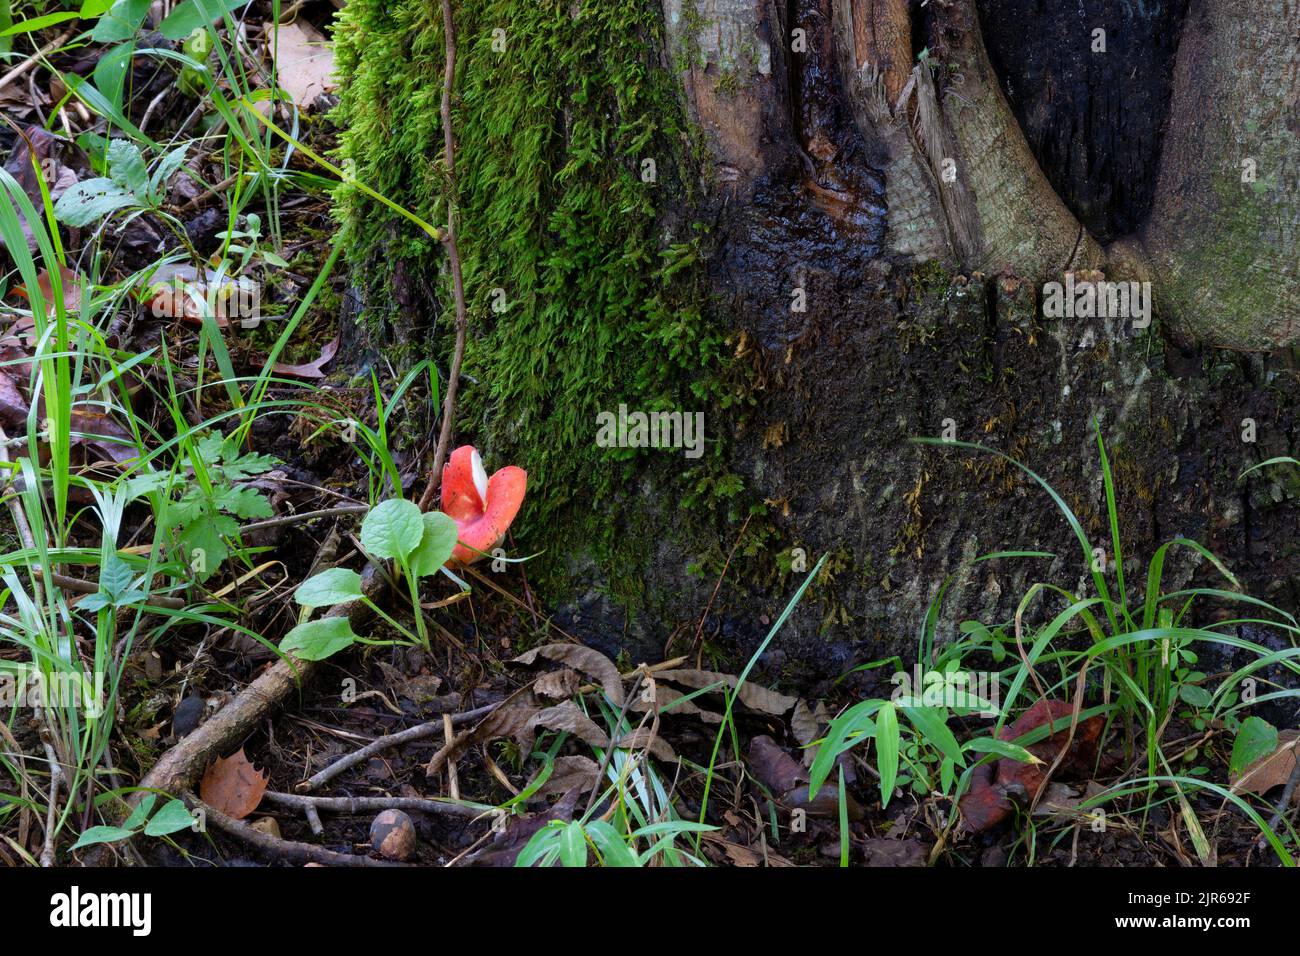 En la base de un árbol entre otras plantas crece un hongo rojo Russula Mushroom. En Tennessee Foto de stock